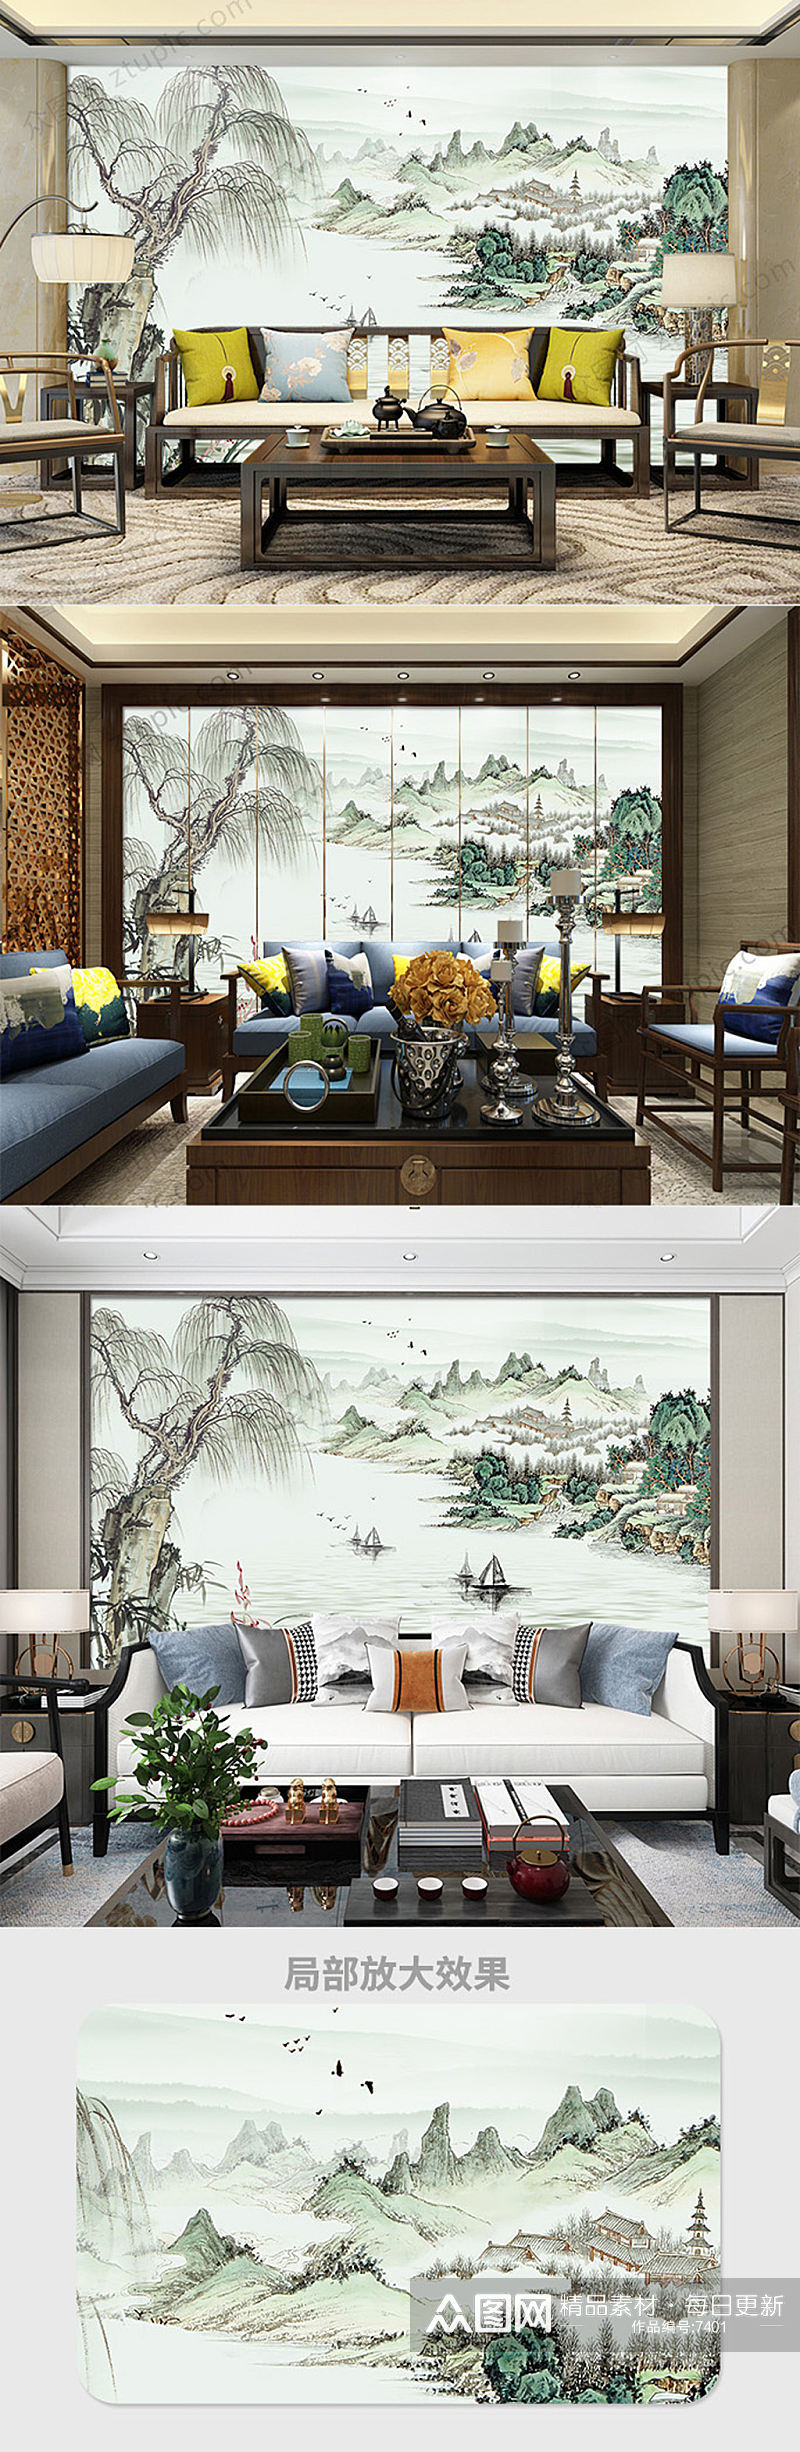 中国风淡雅水墨背景墙素材